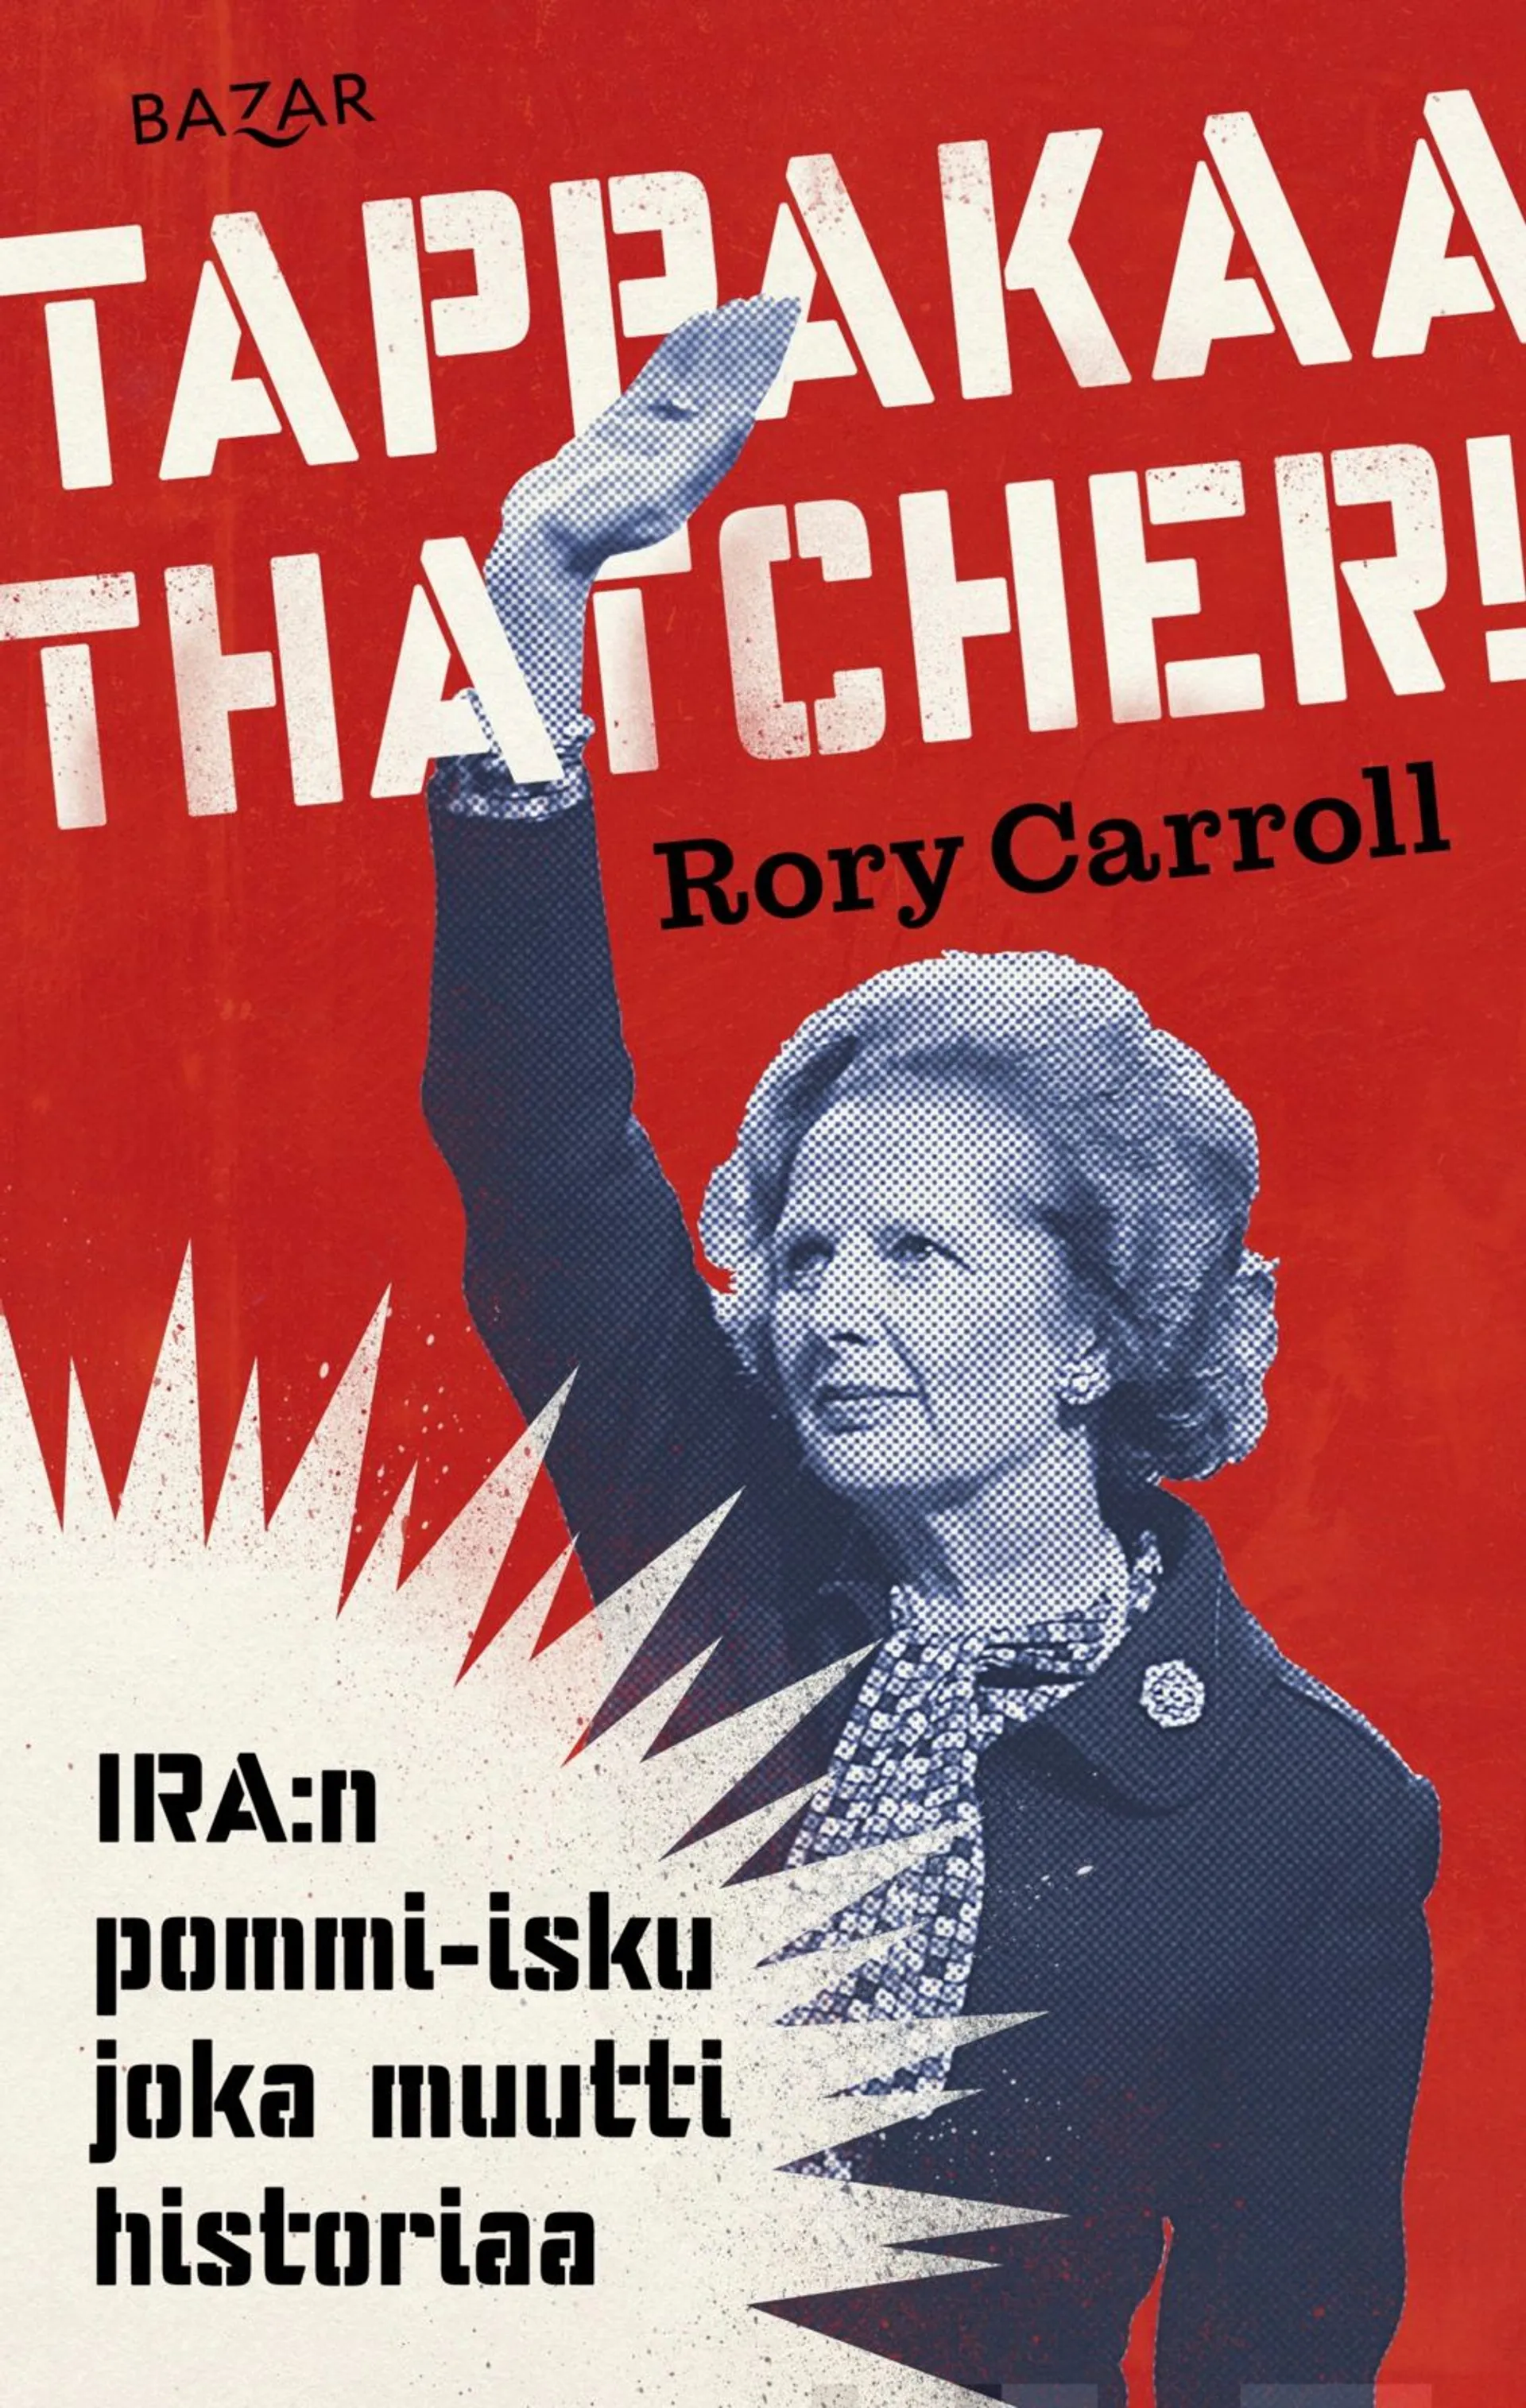 Carroll, Tappakaa Thatcher! - IRA:n pommi-isku joka muutti historiaa